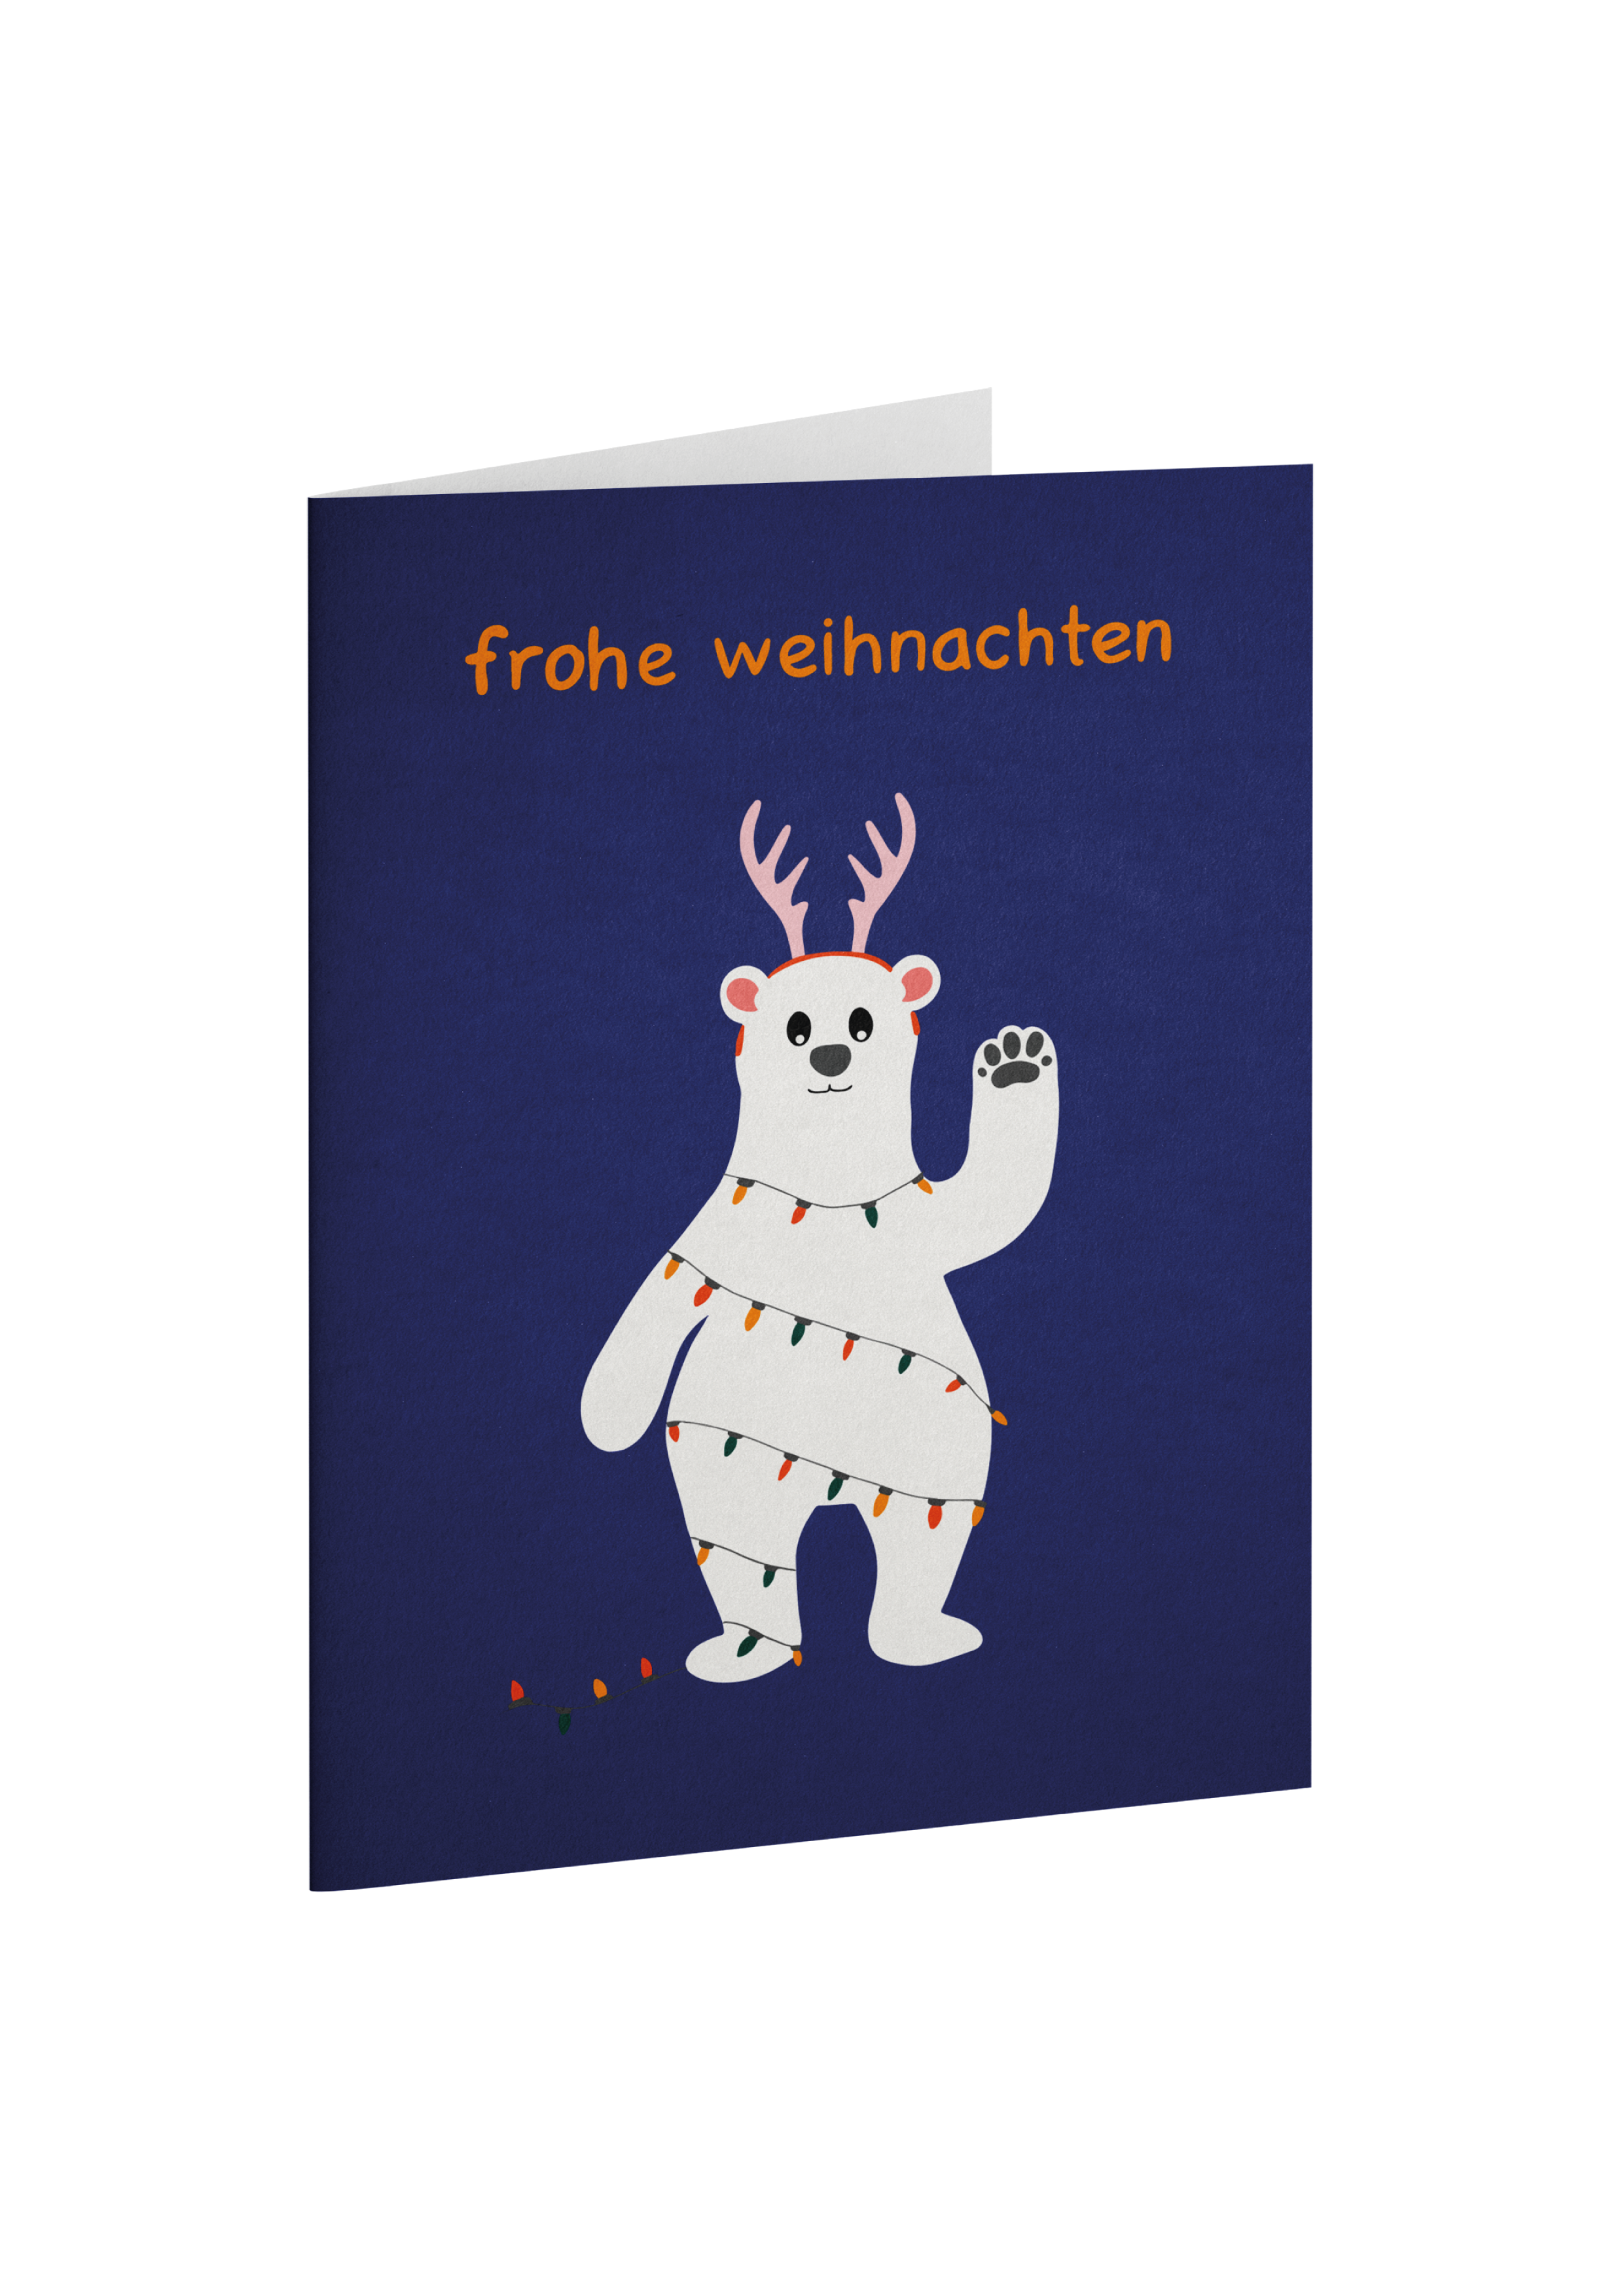 Greeting card set "Gratulieren mit Tieren" (German)